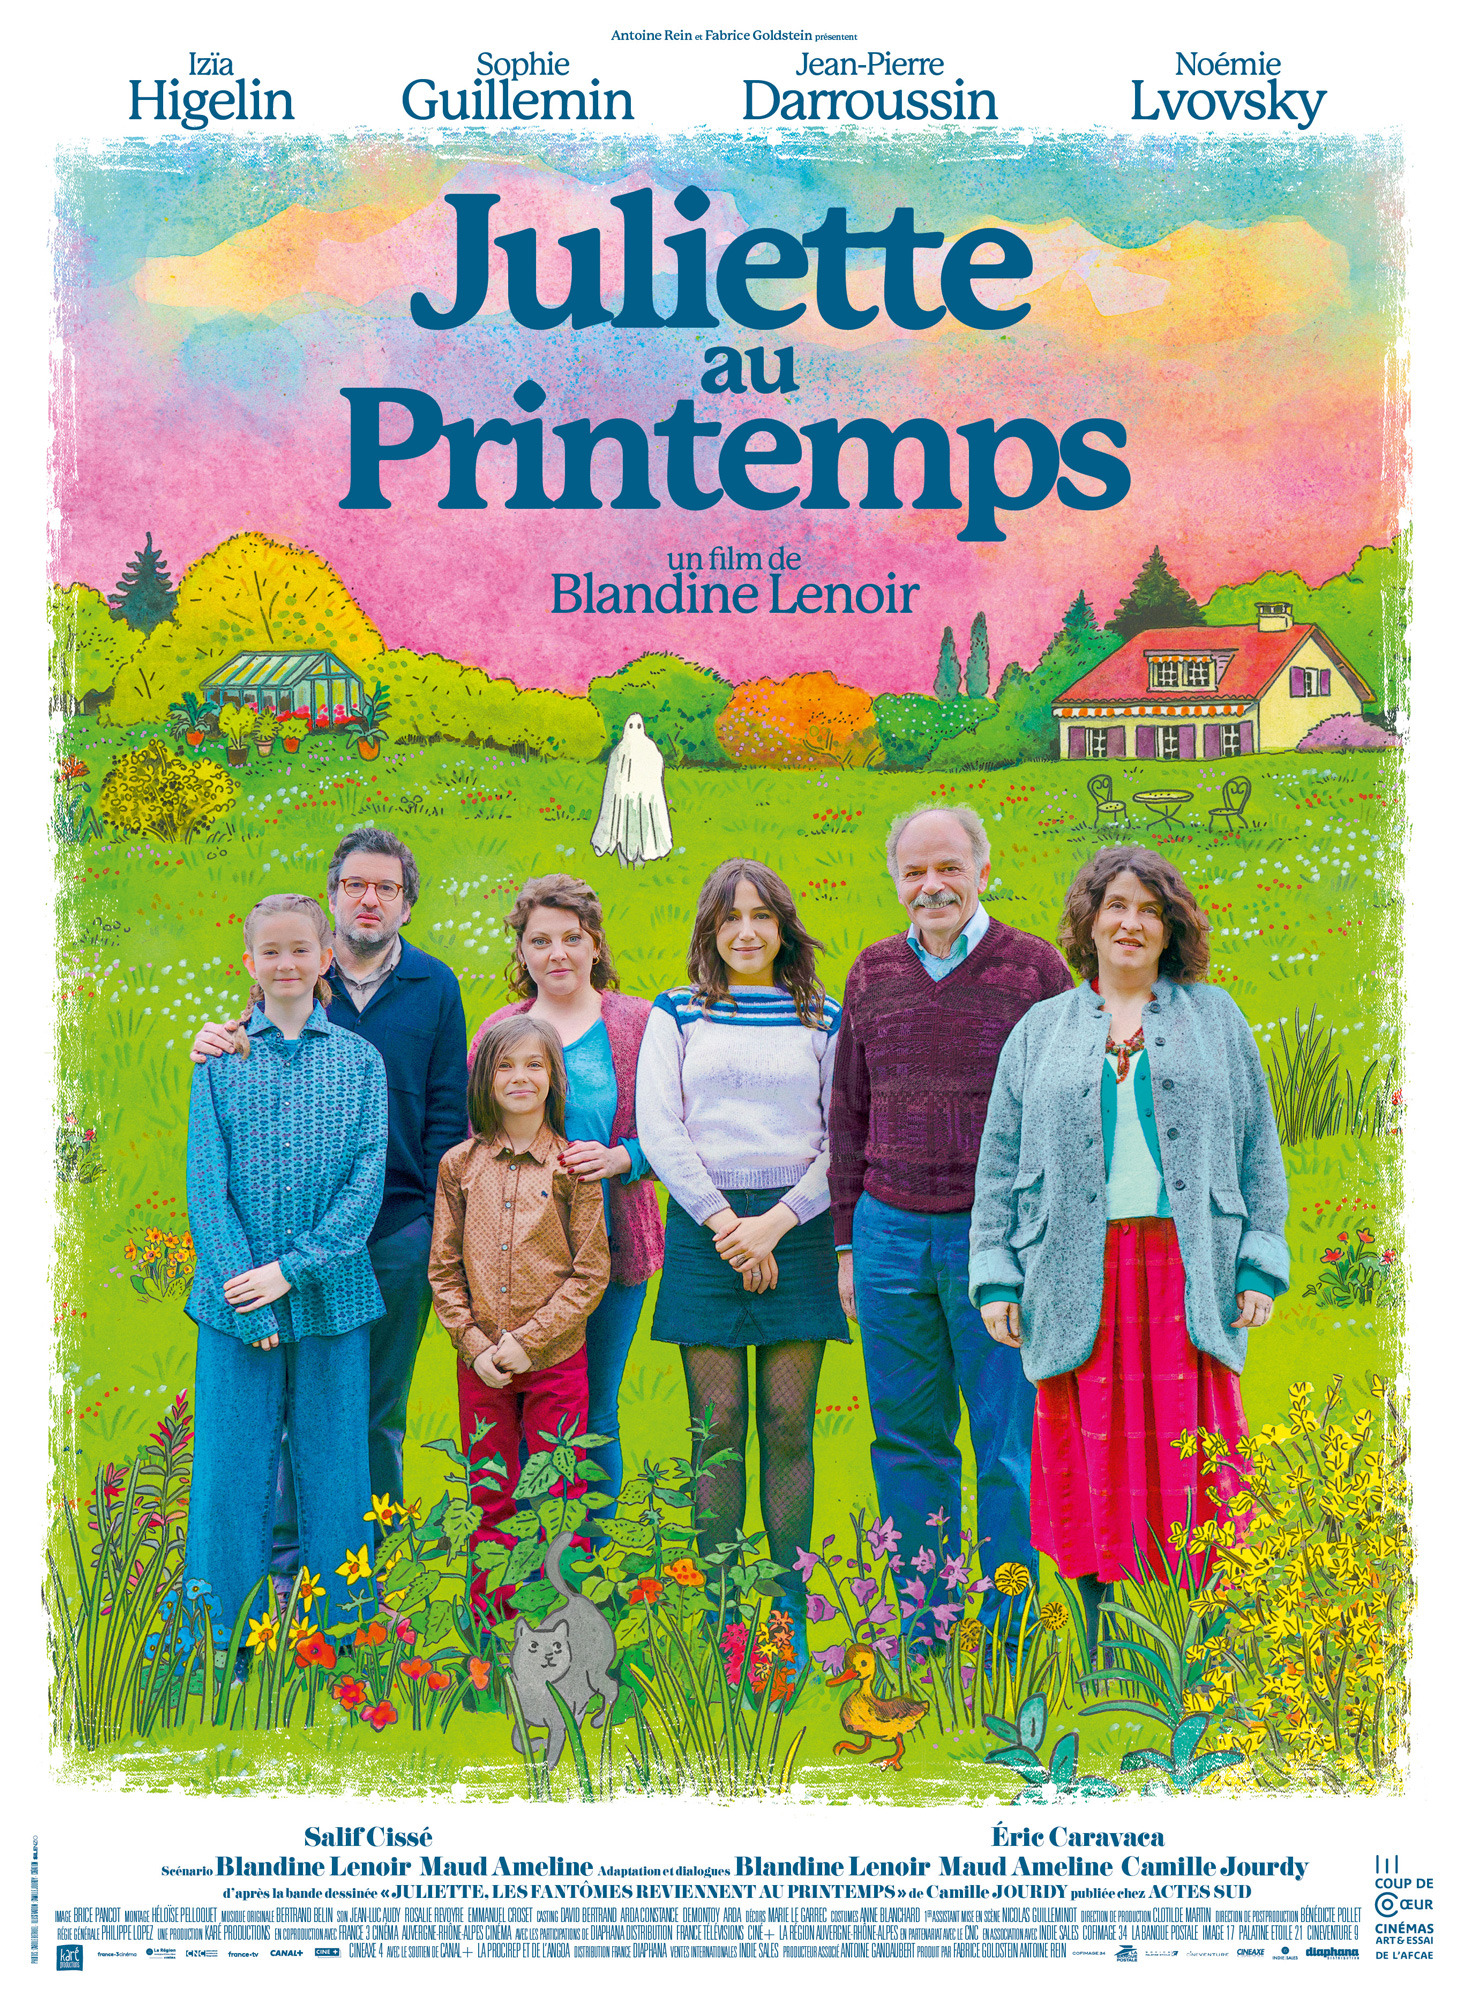 Mega Sized Movie Poster Image for Juliette au printemps 